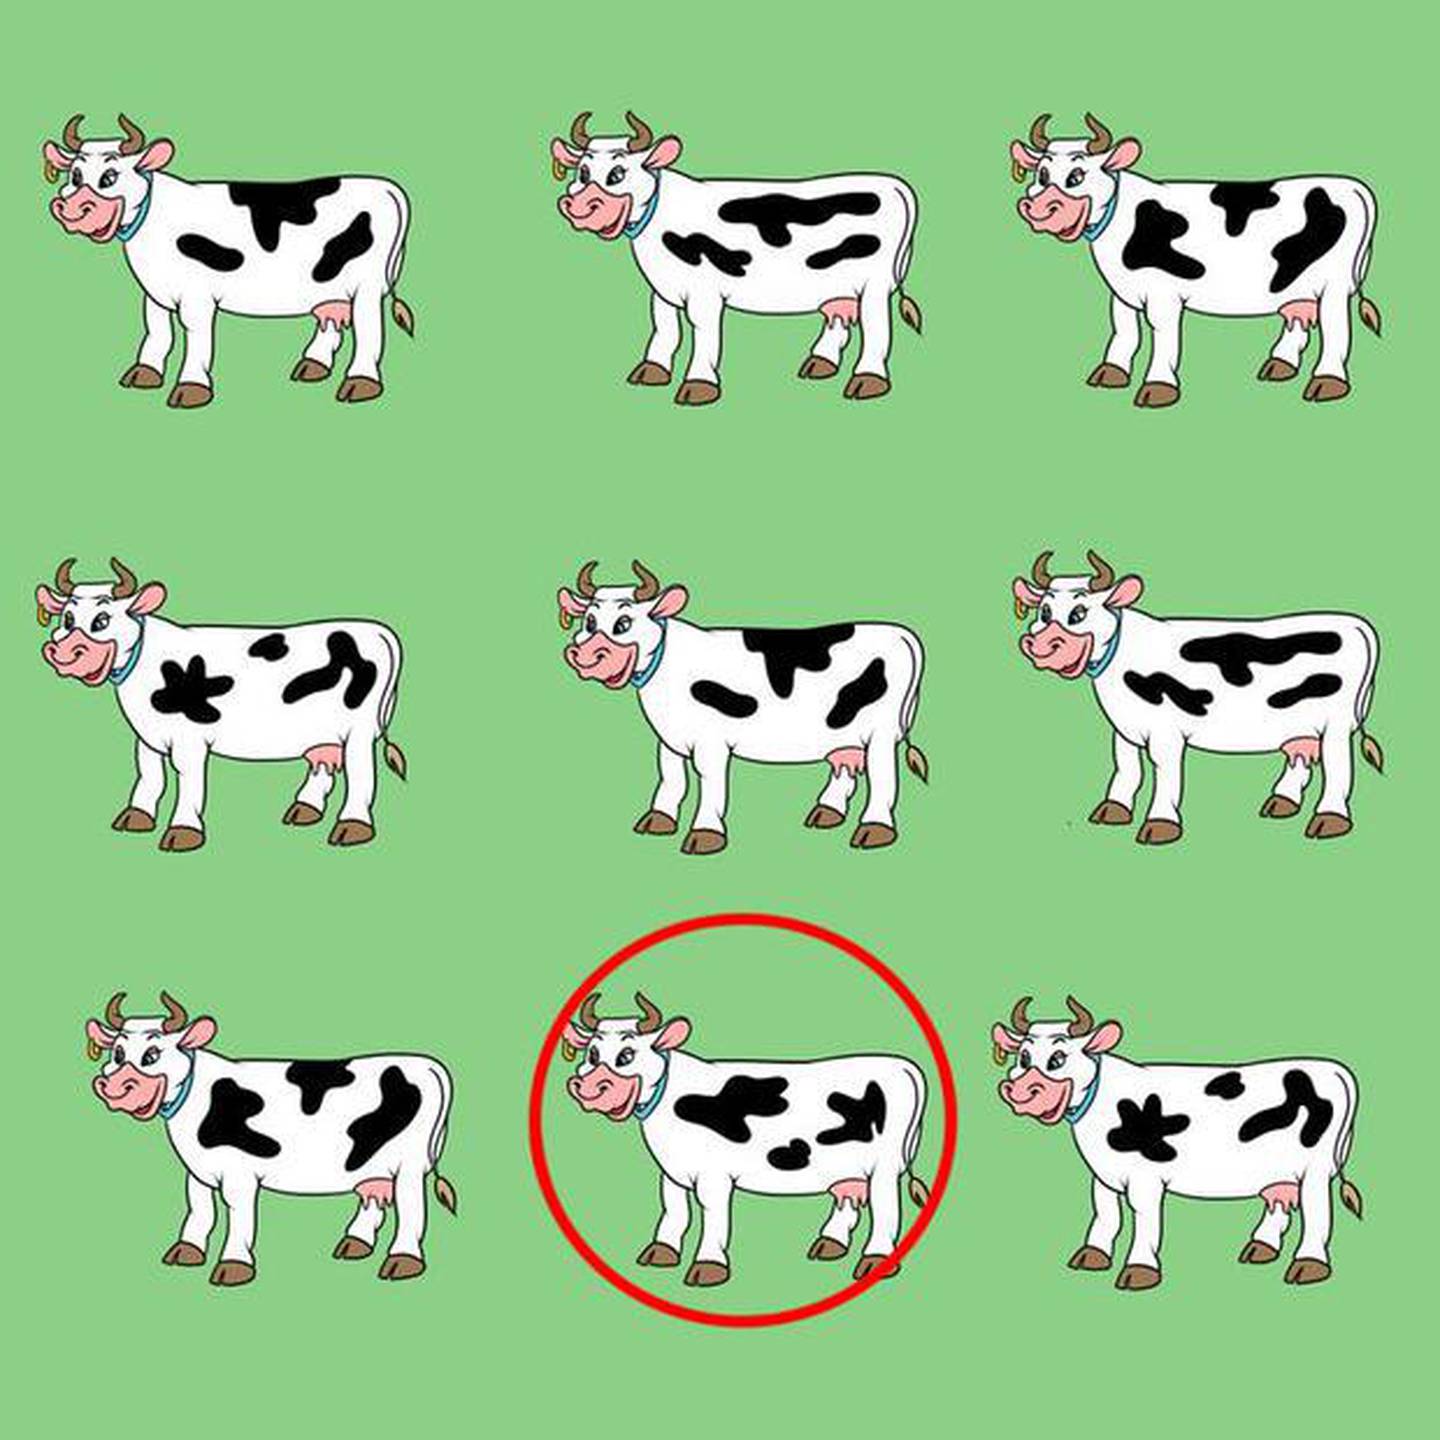 Aquí está la vaca diferente.